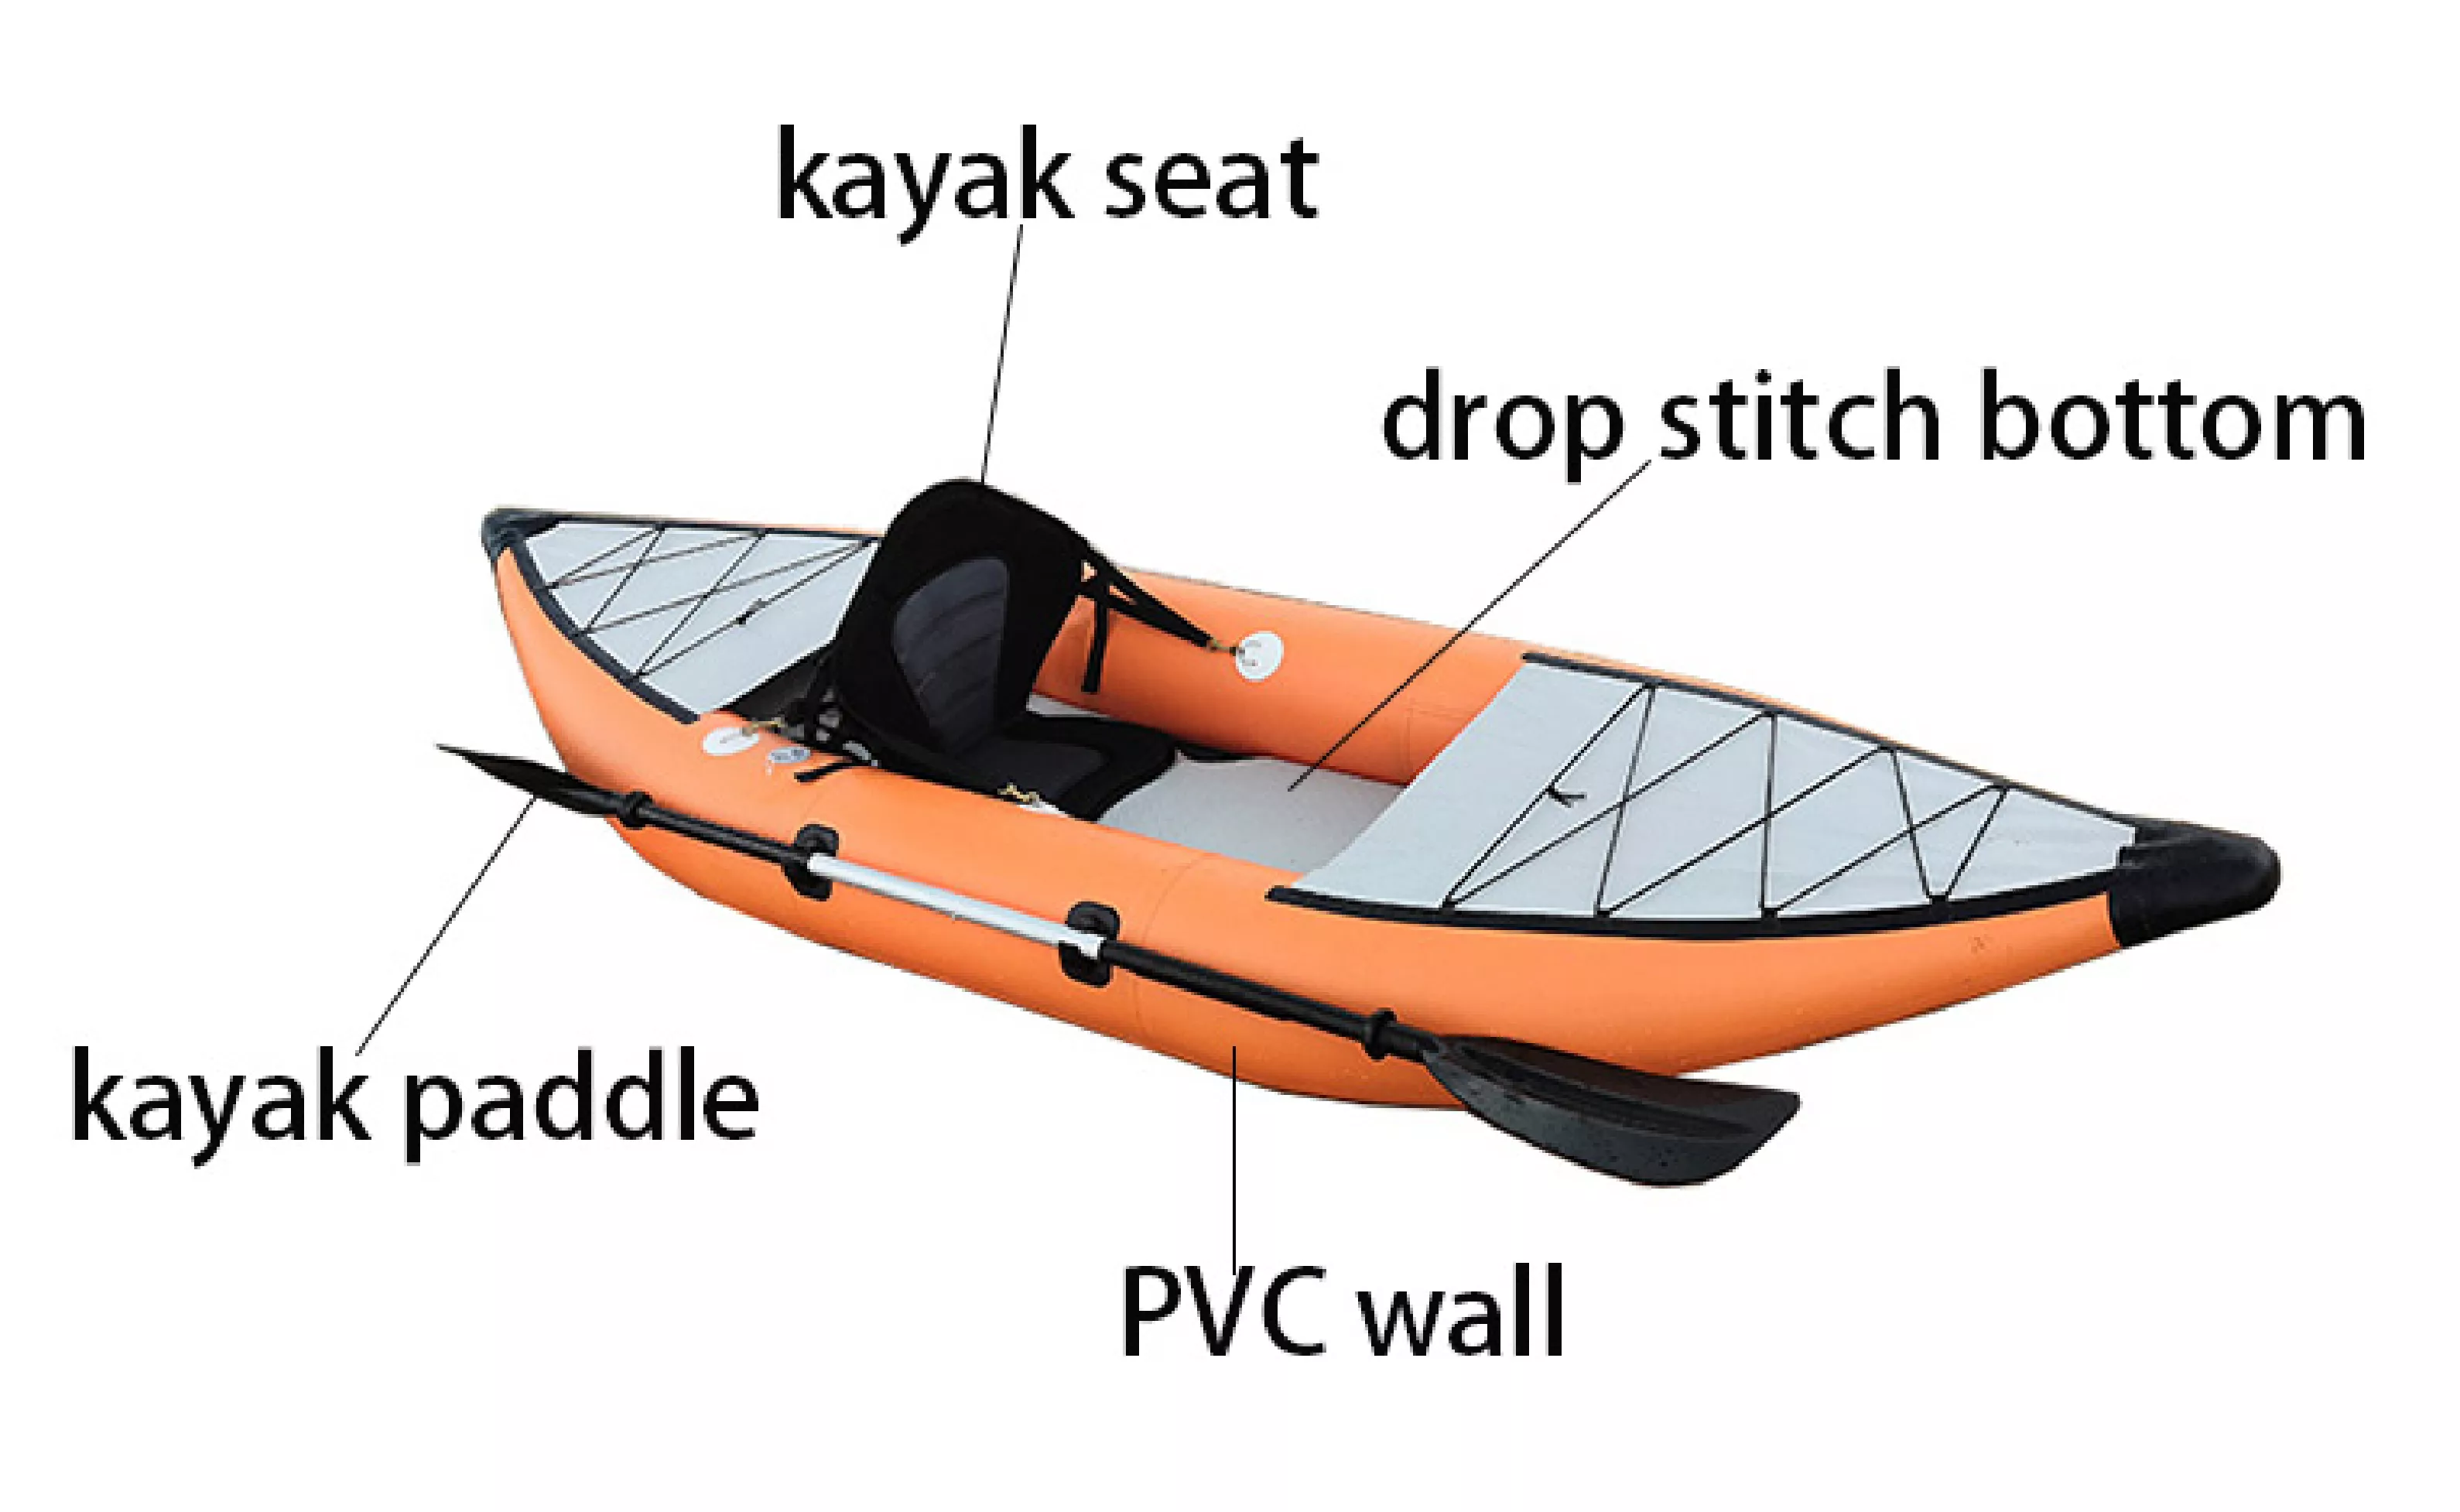 yas ua Tuam Tshoj lub neej tsho inflatable nuv ntses kayak_canoe muag padel kayak ib lub rooj kayak (2)